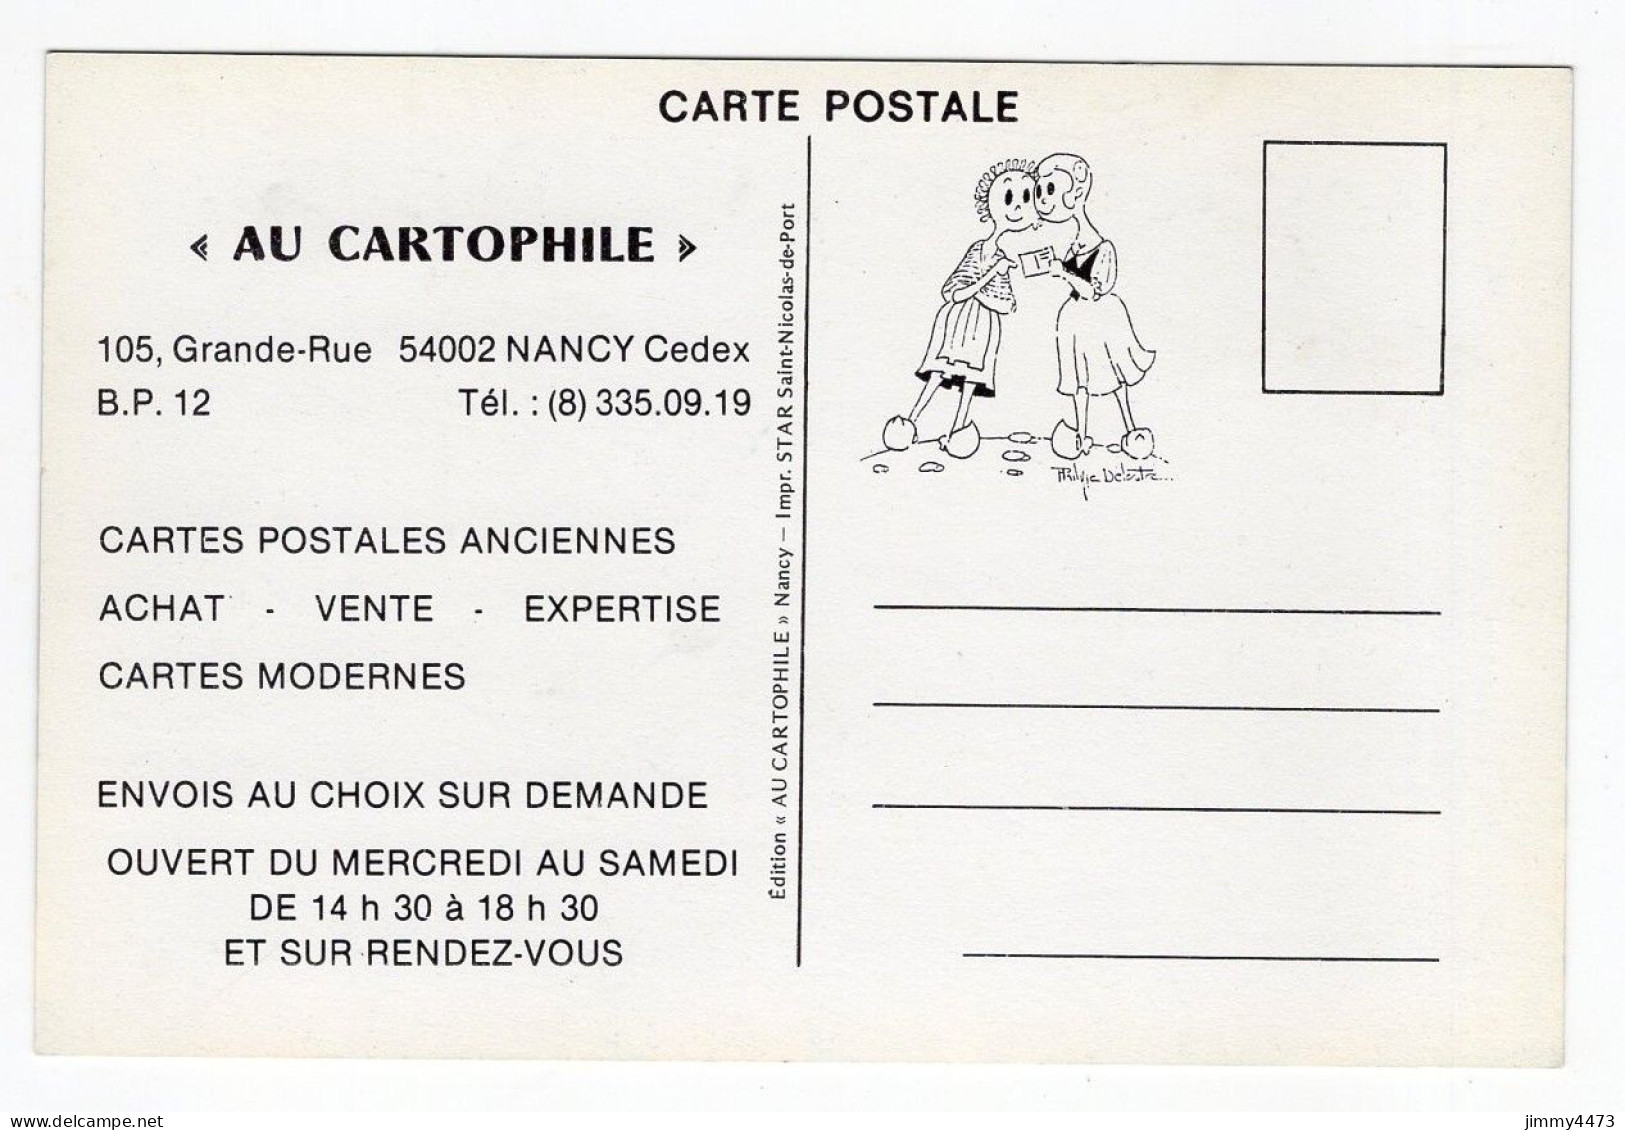 CPM - FOIRE DE NANCY 1909 - 1979 - 1er -11 JUIN 1979 - Edit. AU CARTOPHILE - Nancy - Borse E Saloni Del Collezionismo